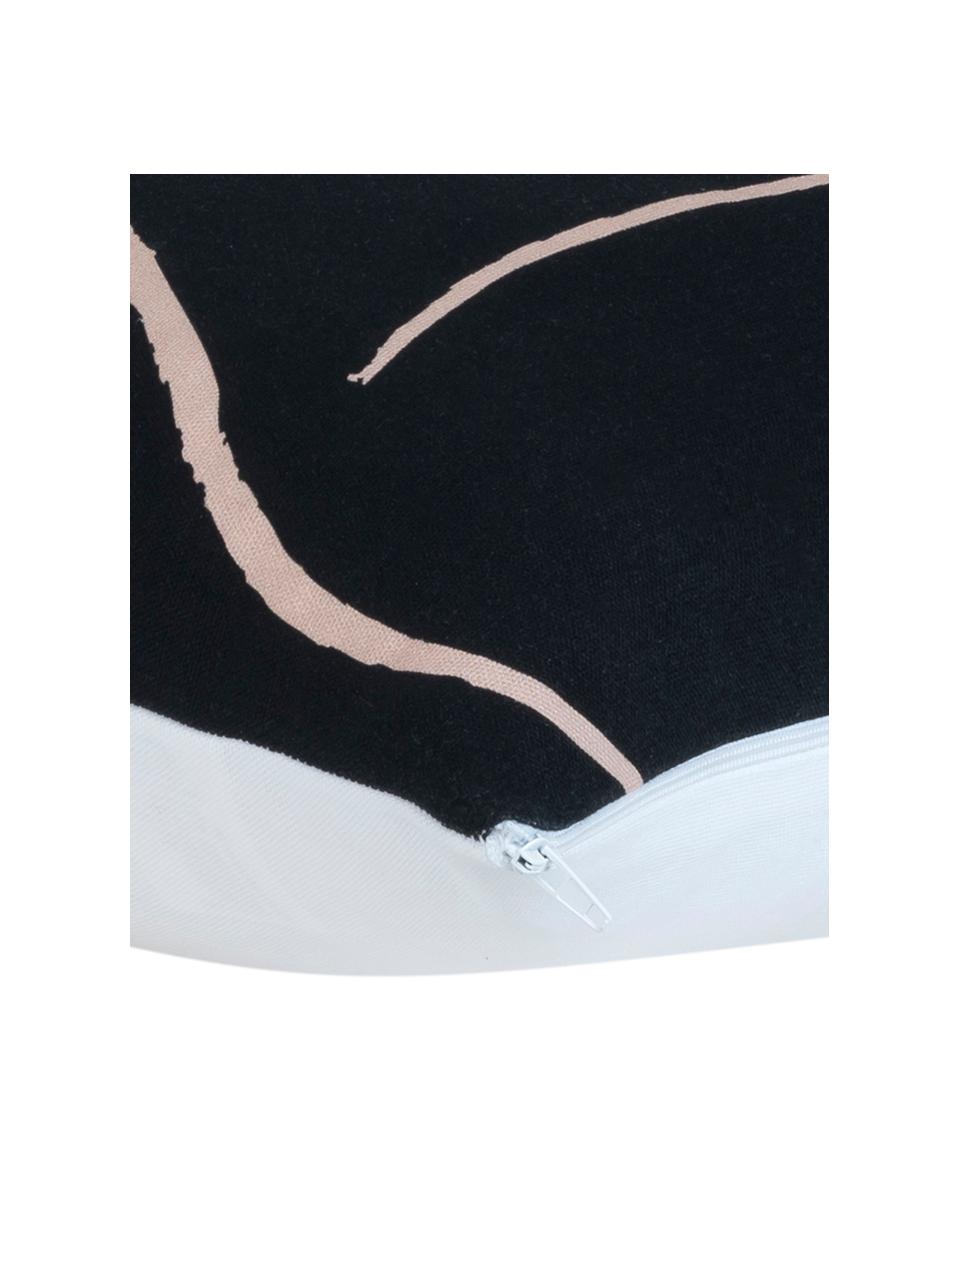 Federa arredo con stampa disegnata Curves, 100% cotone, Nero, rosa, Larg. 40 x Lung. 40 cm